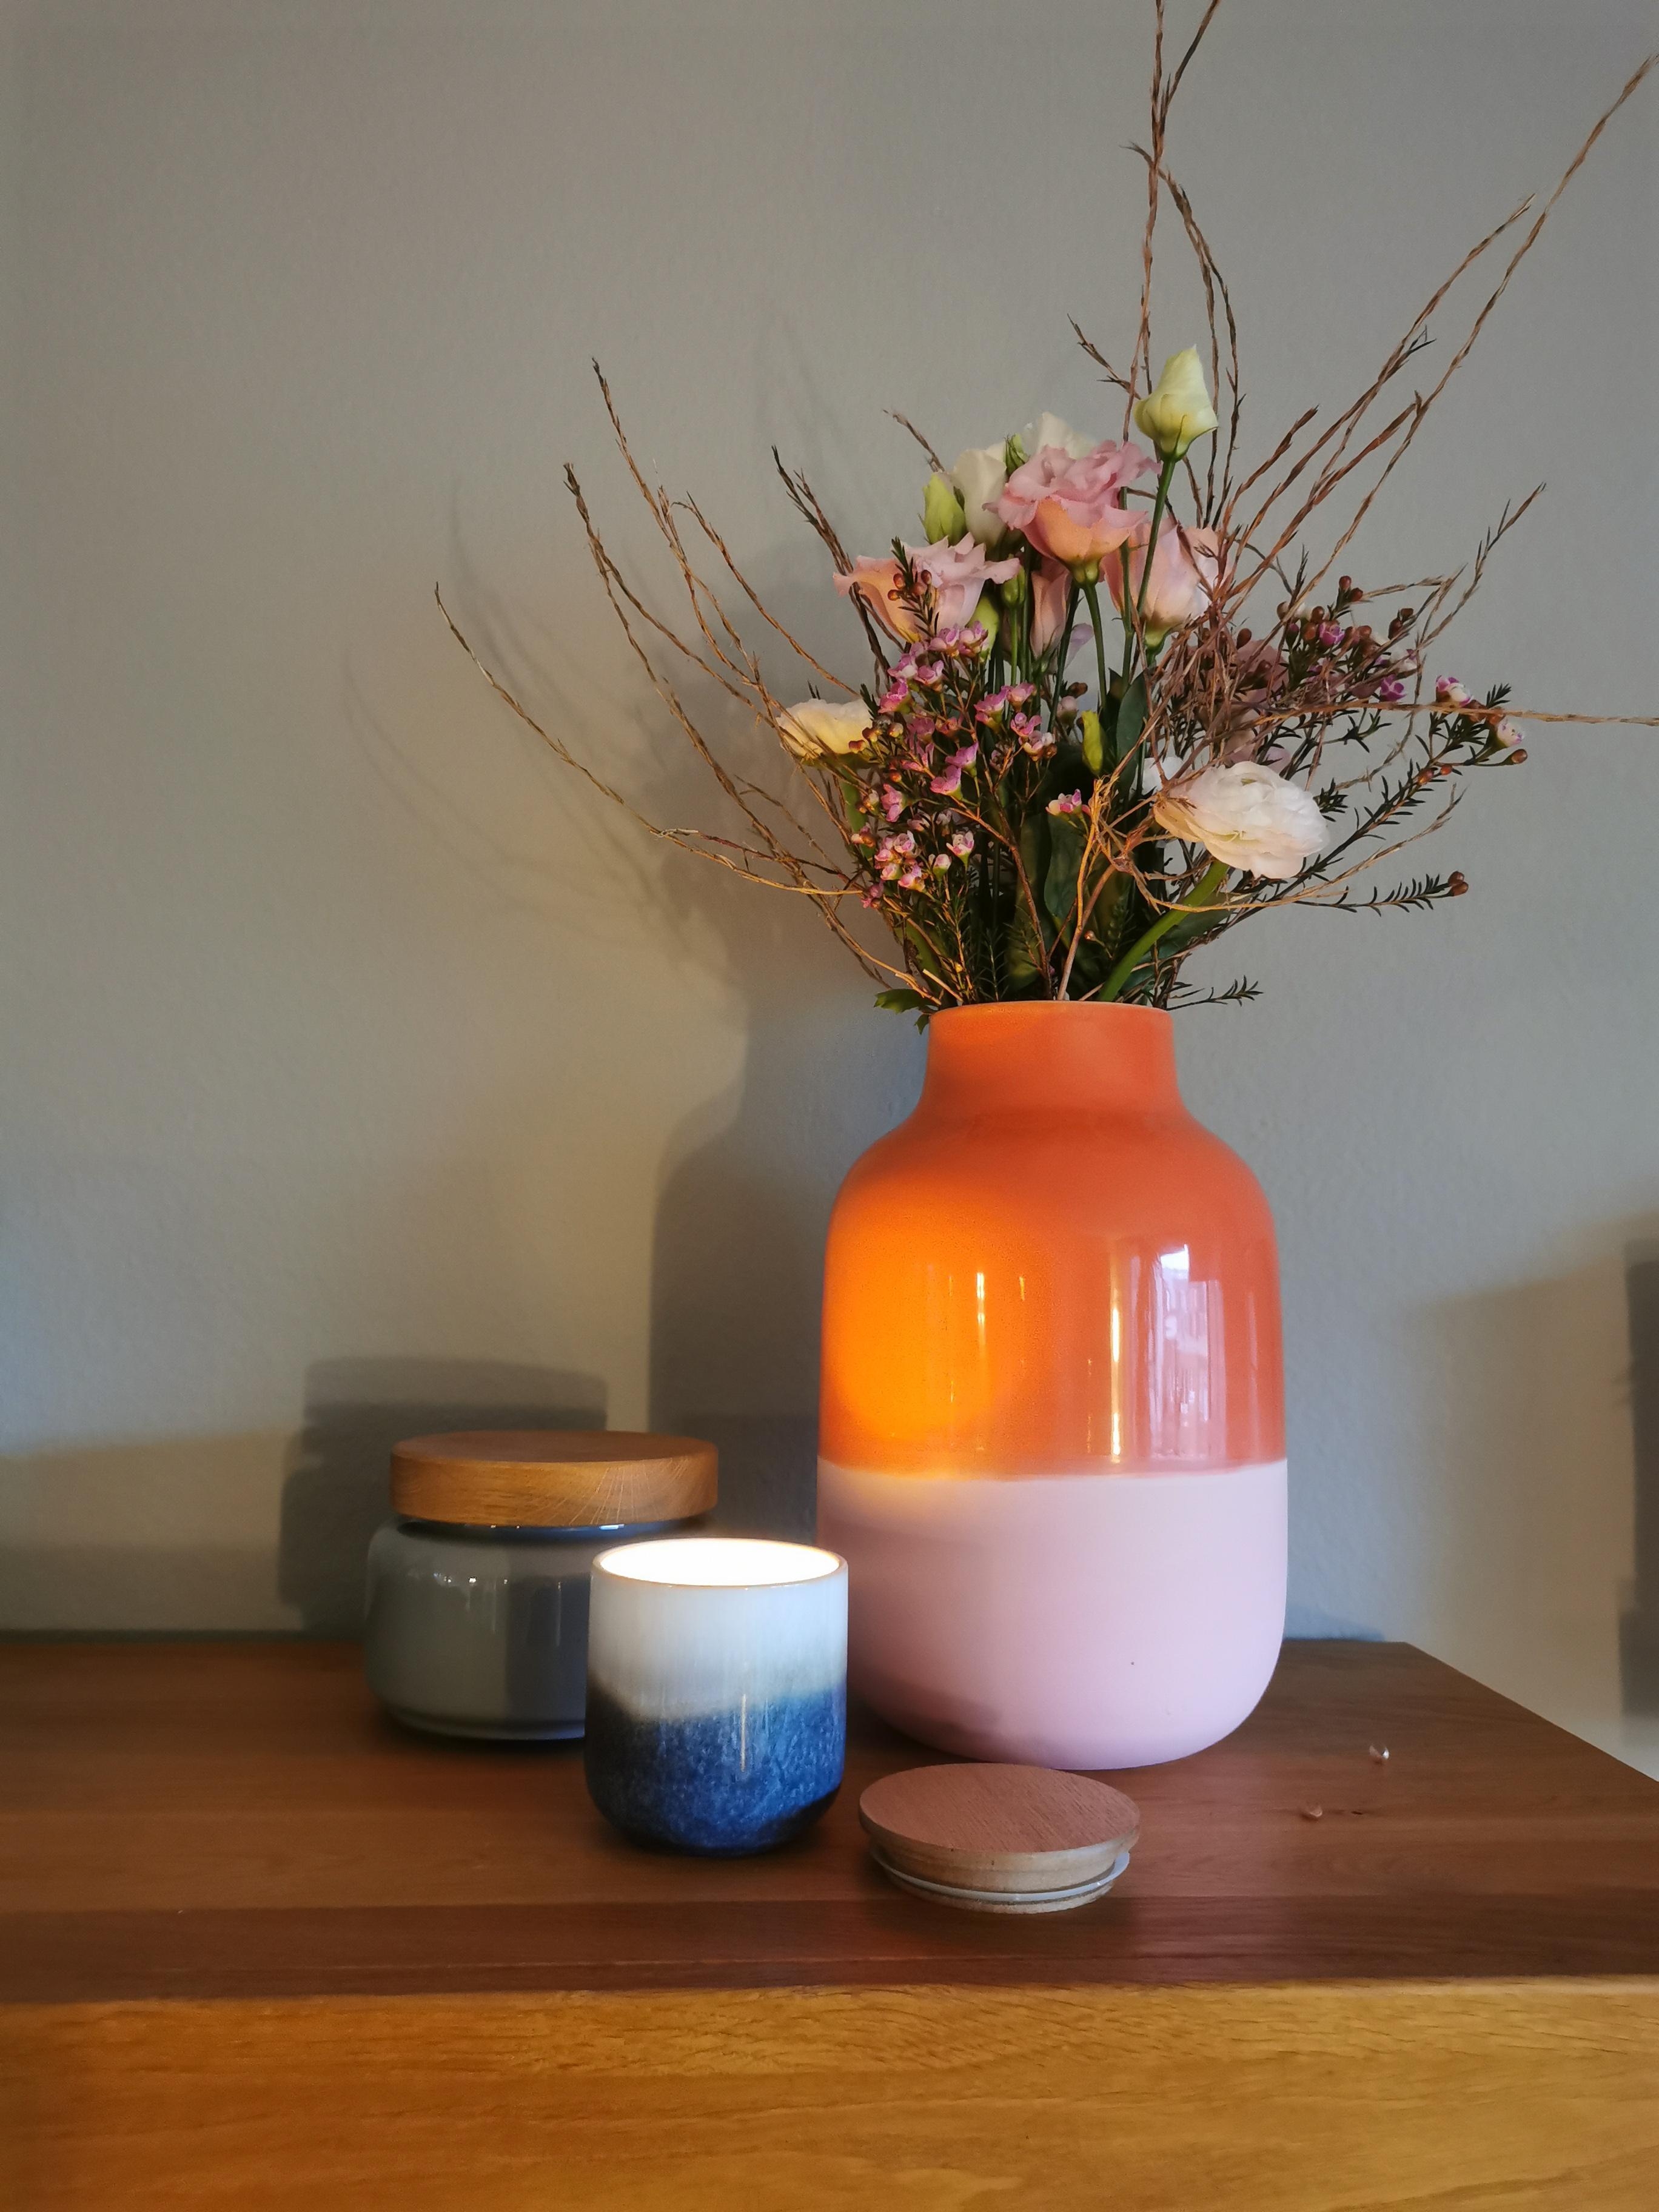 Unsere neue Lieblings Vase mit wunderschönen Frühlings Blumen ❤️
#vasen #cologne #blumen #frühling 